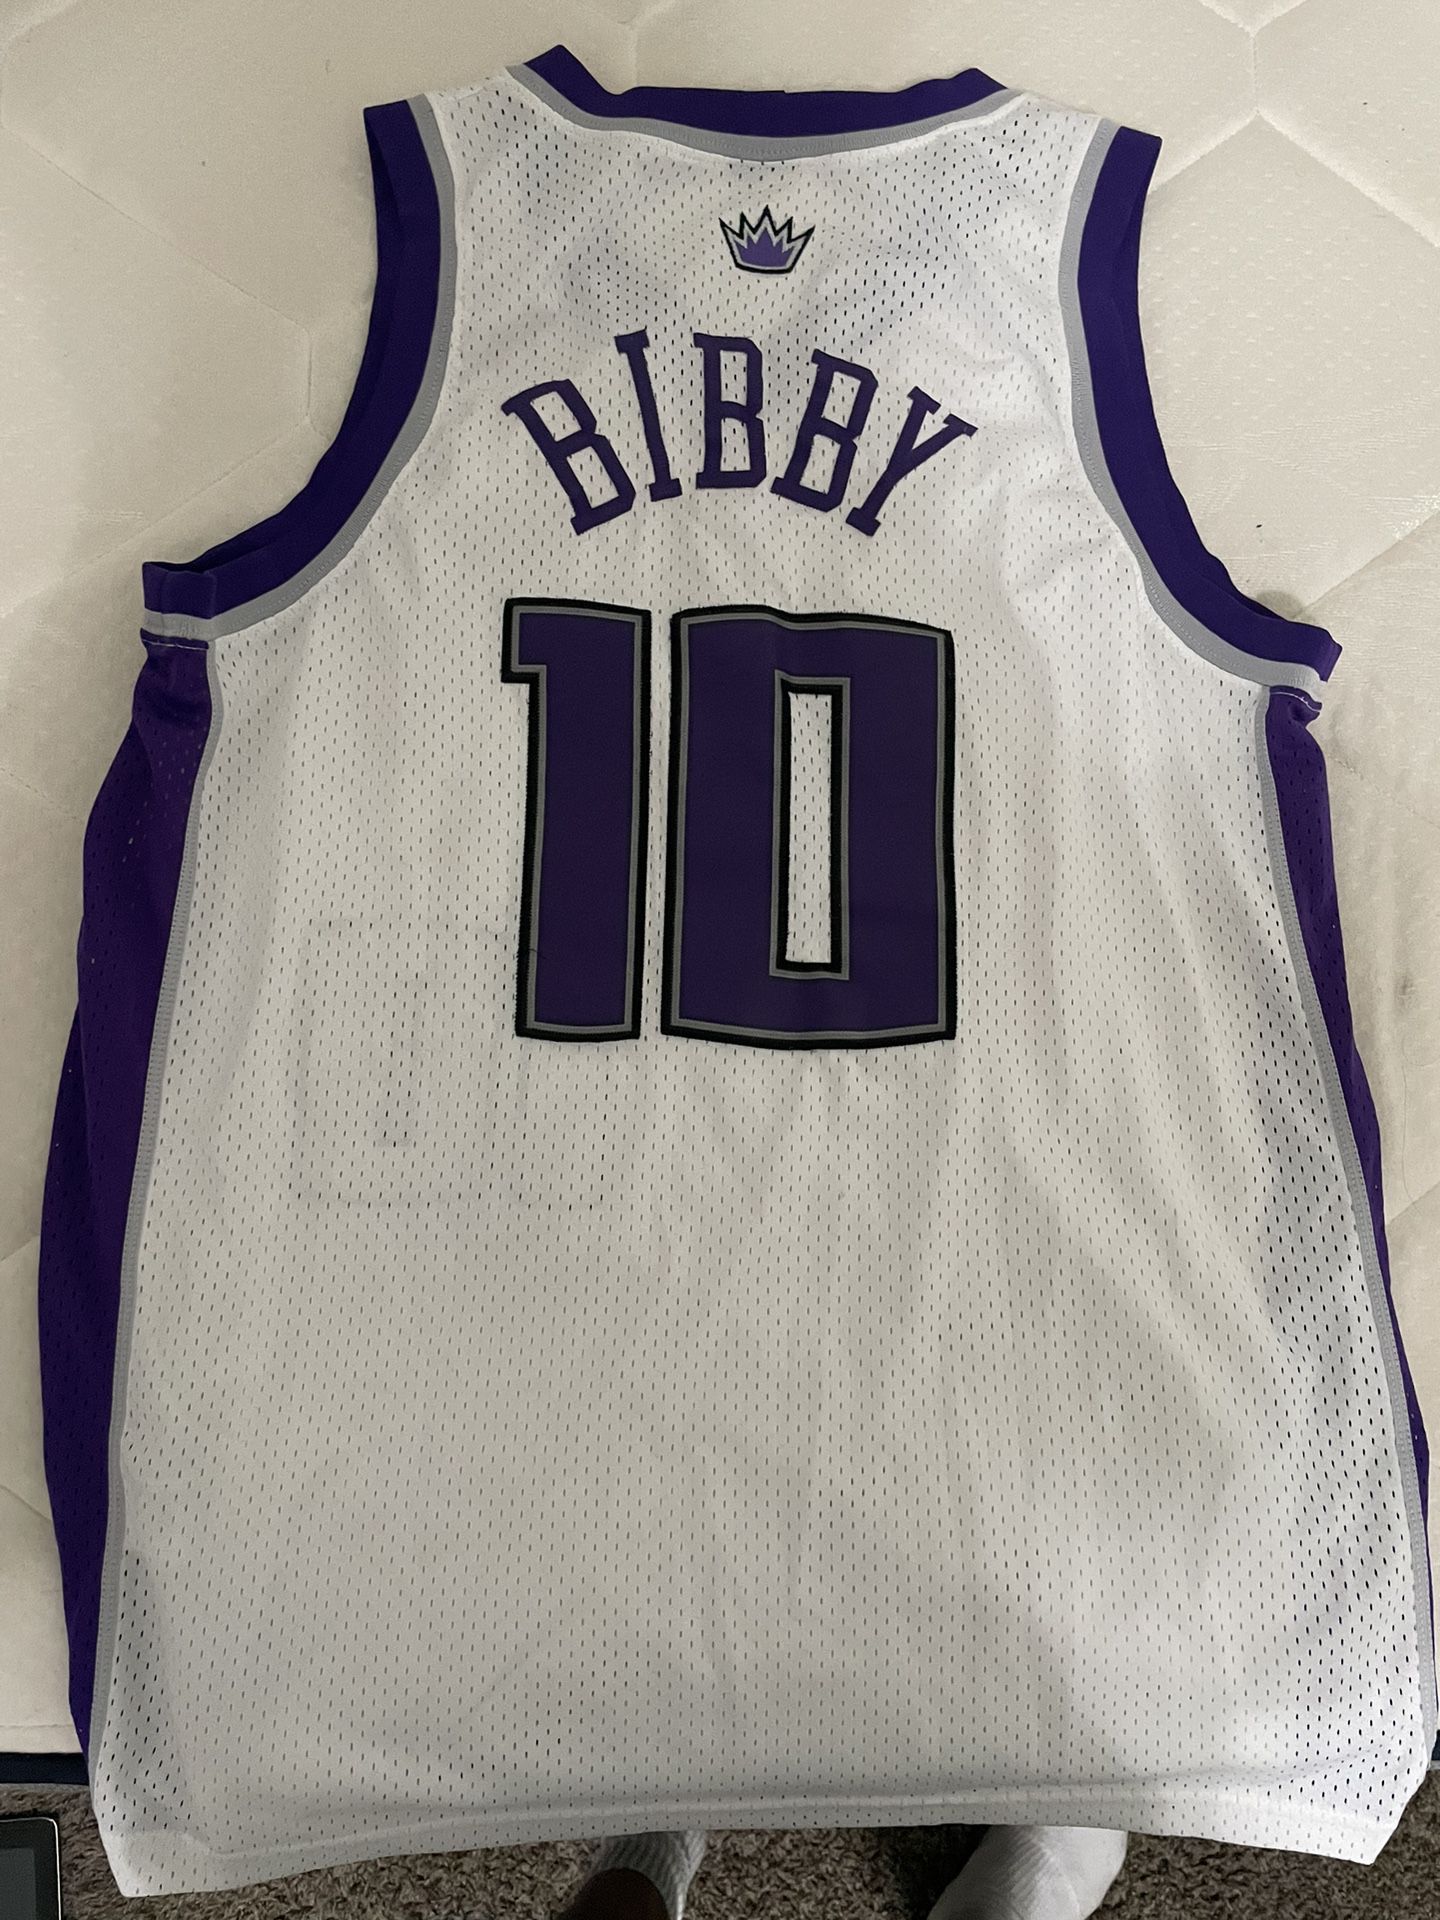 Mike Bibby Grizzlies Jersey for Sale in Phoenix, AZ - OfferUp